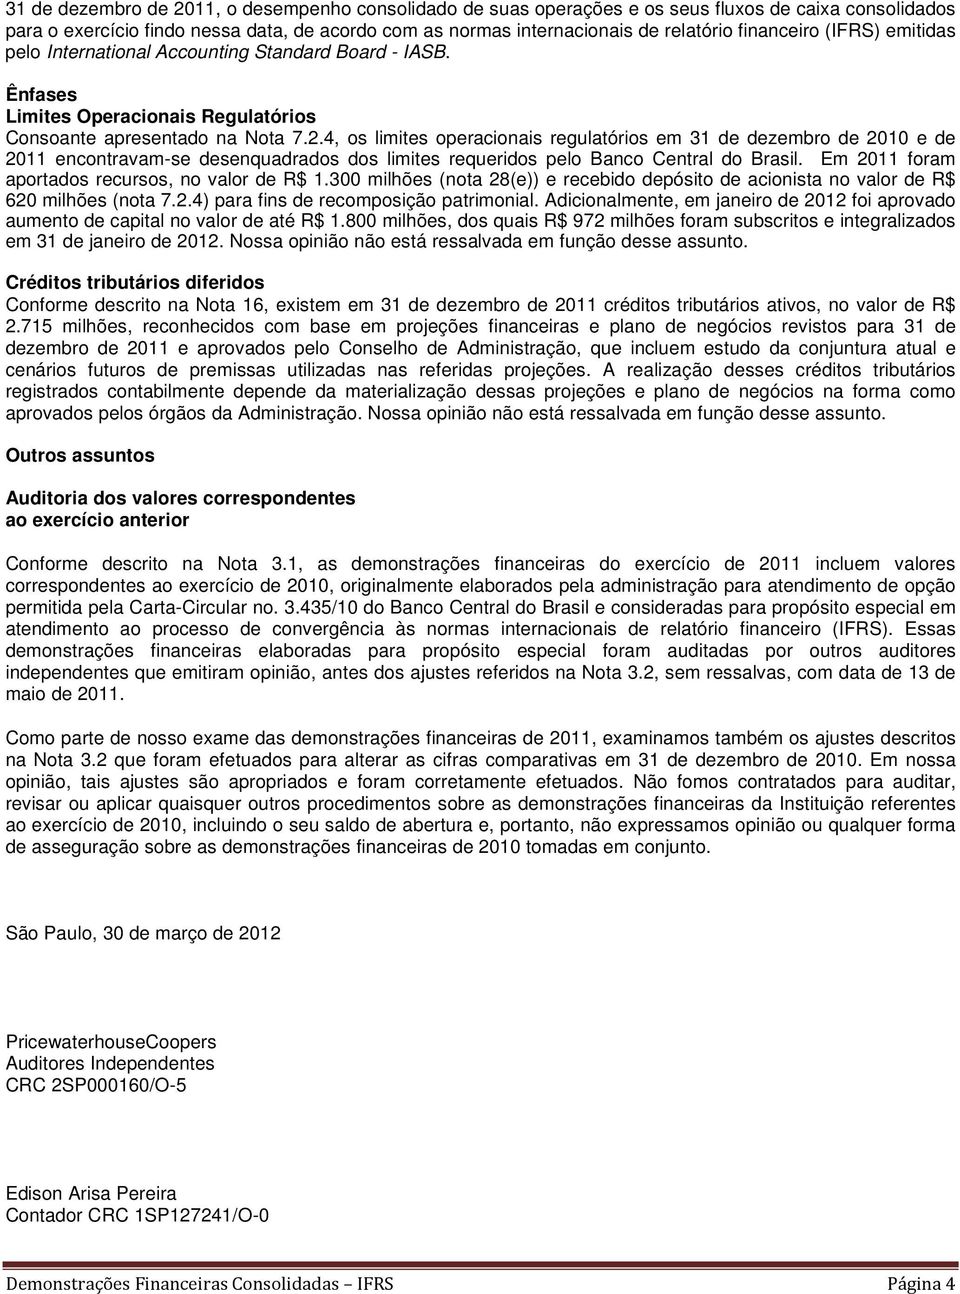 4, os limites operacionais regulatórios em 31 de dezembro de 2010 e de 2011 encontravam-se desenquadrados dos limites requeridos pelo Banco Central do Brasil.